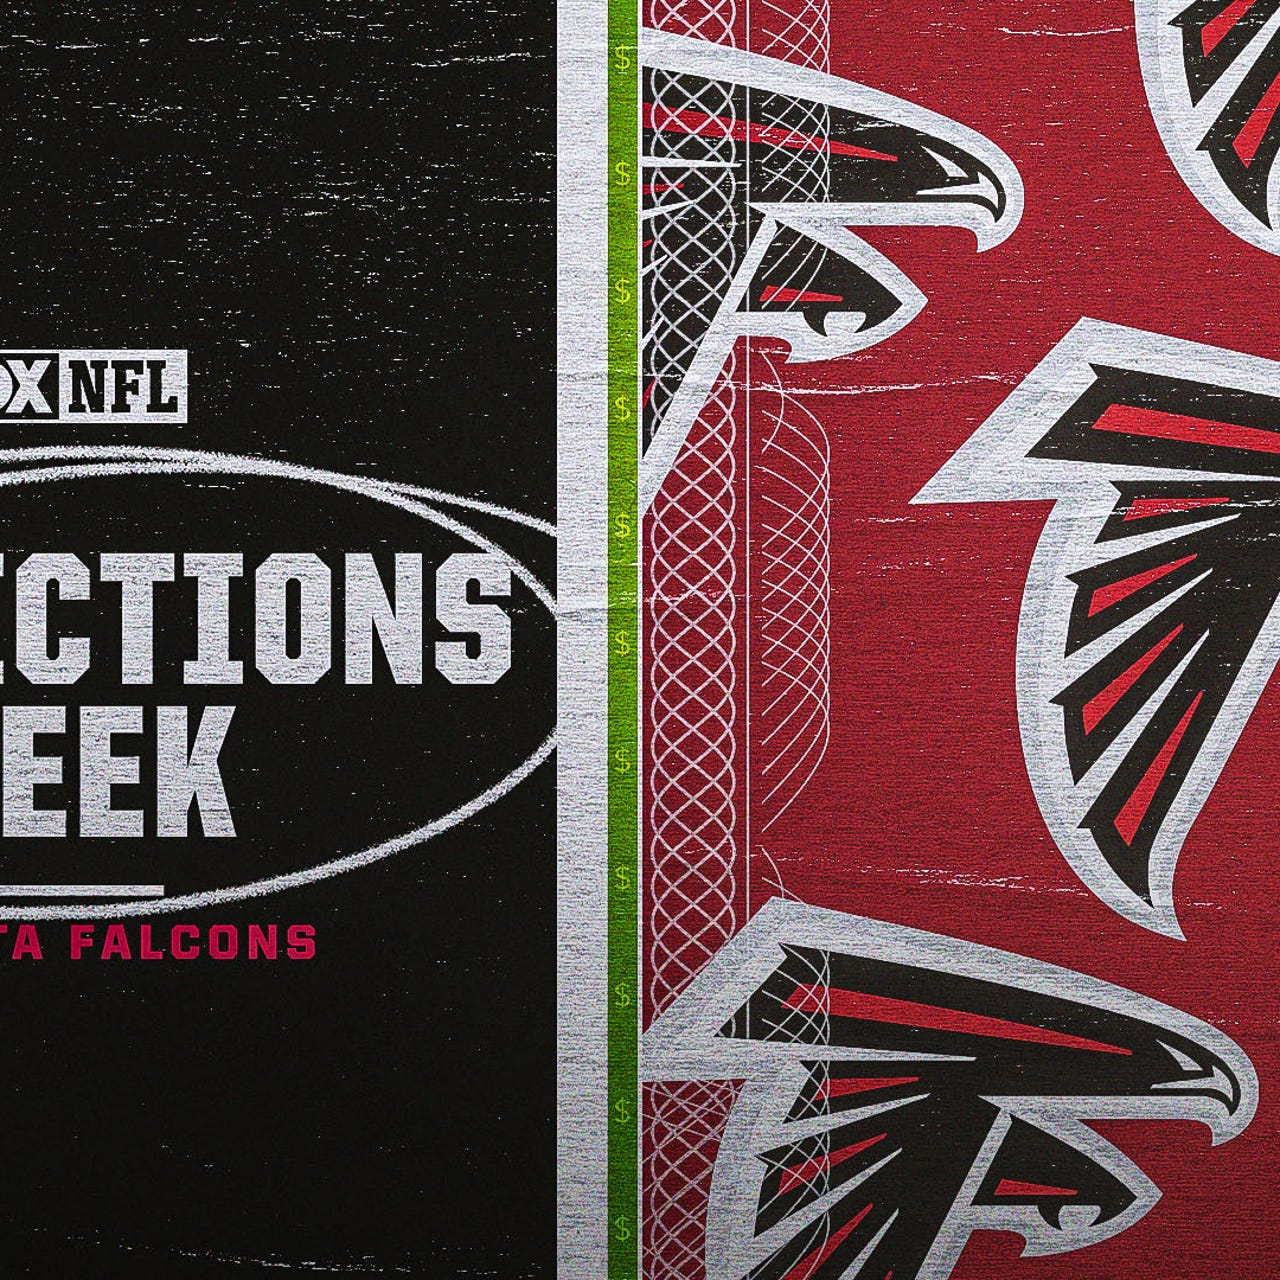 Atlanta Falcons vs Cincinnati Bengals Preview and Prediction - All Falcons